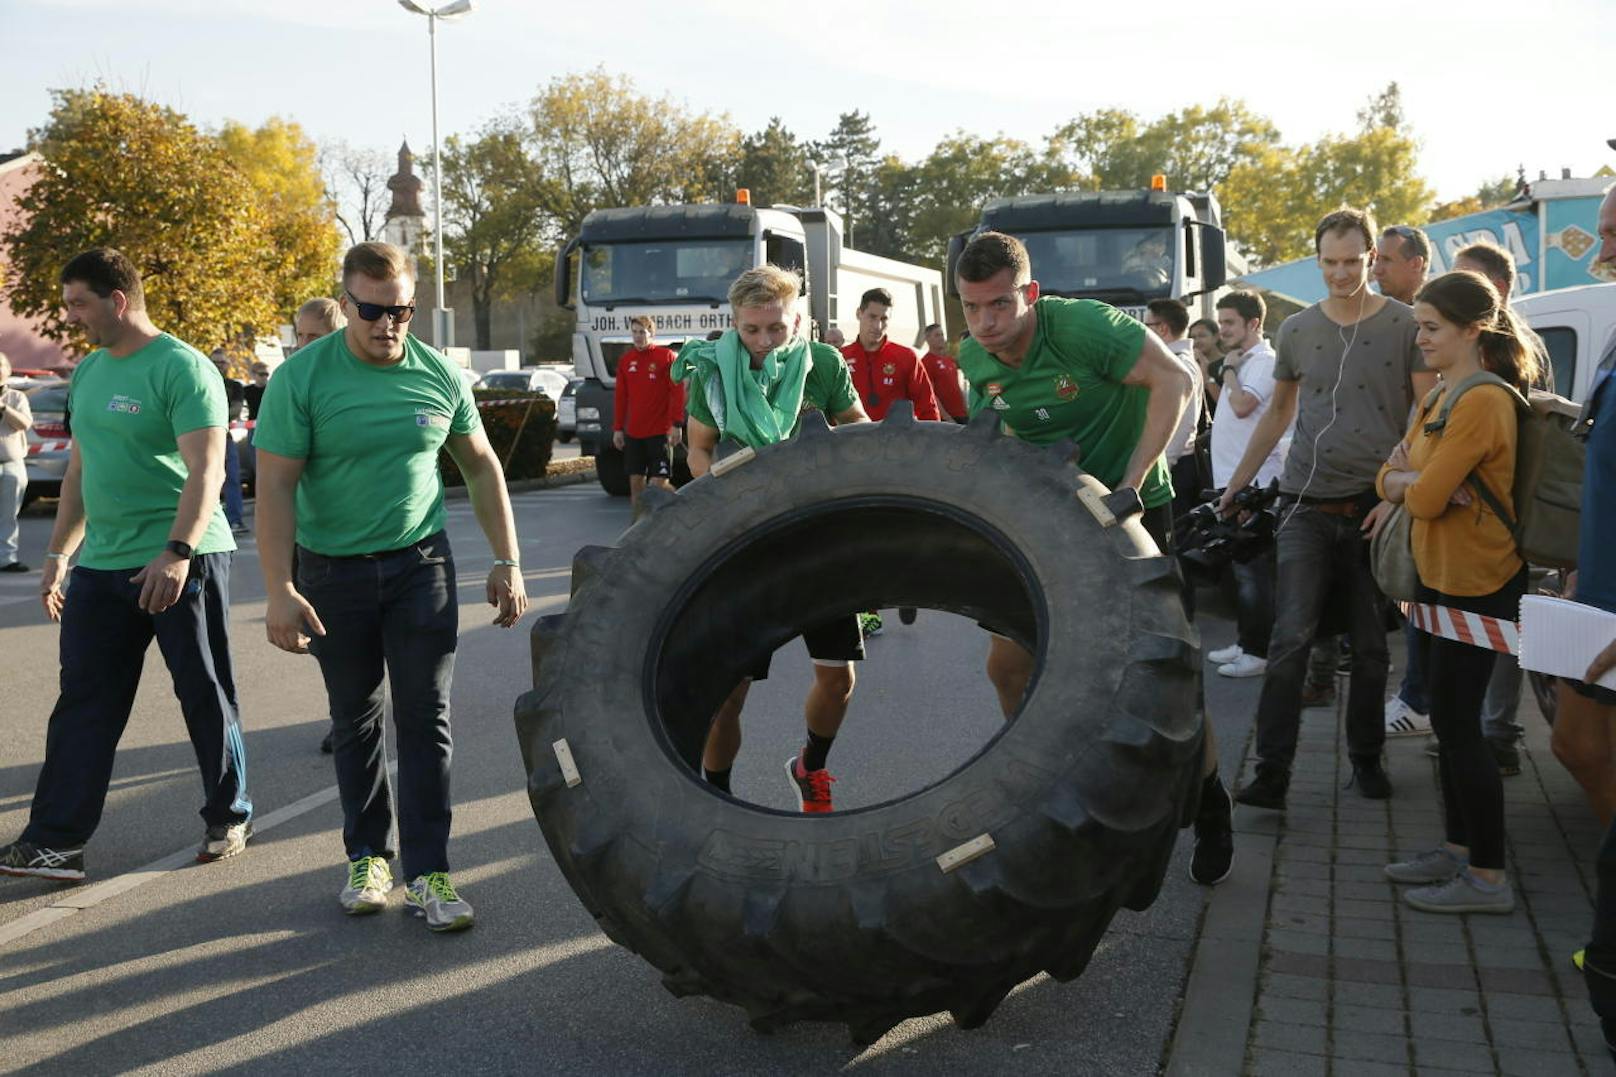 Fußball meets Strongman - unter diesem Motto absolvierten die Rapid-Stars ein Training bei "JETZT Fitness" in Groß Enzersdorf. LKW-Ziehen und Reifen-Werfen inklusive. "Heute" hat die spektakulärsten Bilder.